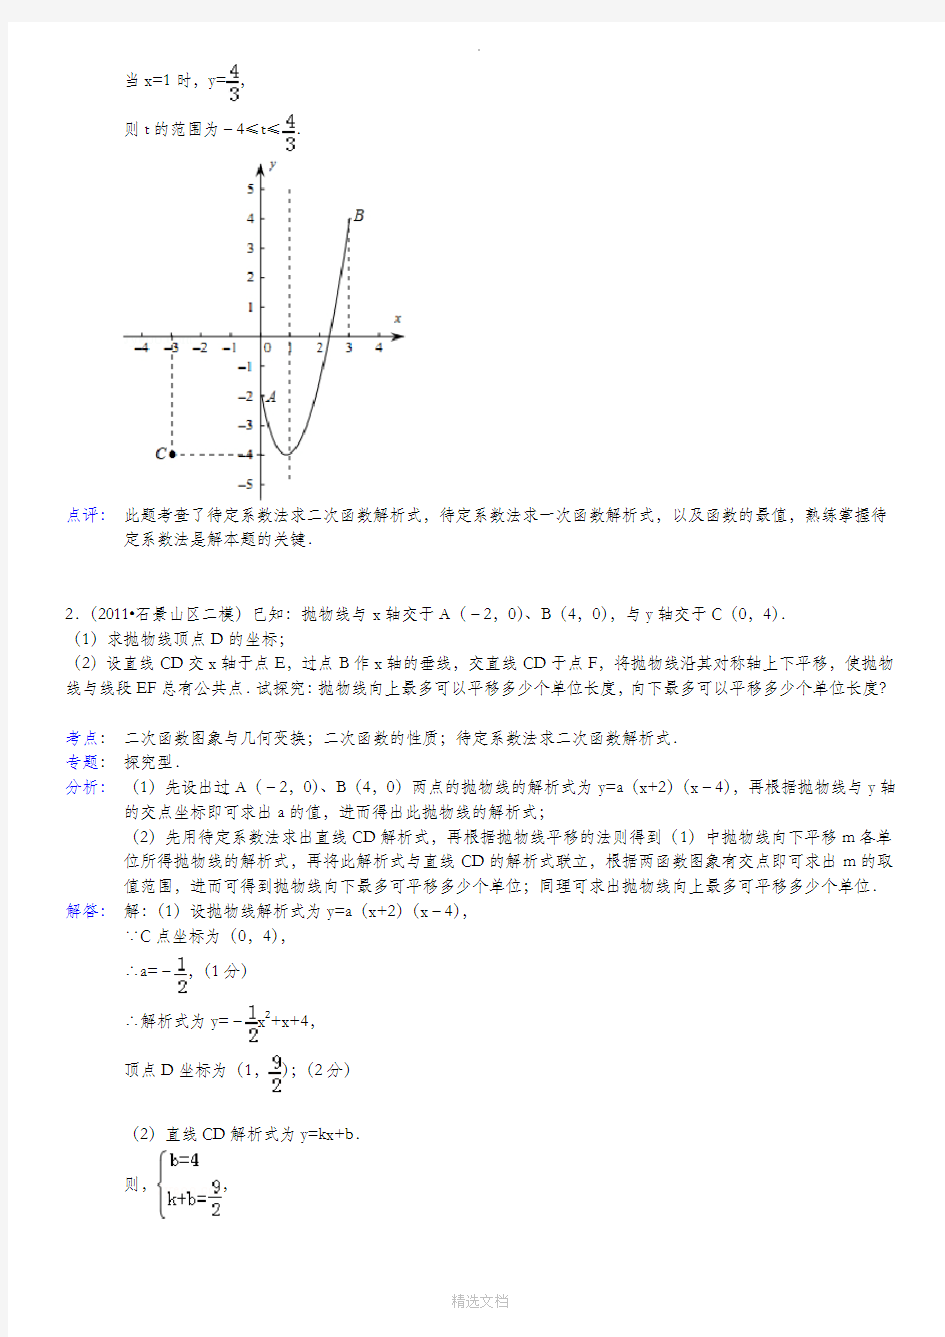 二次函数综合问题之抛物线与直线交点个数问题